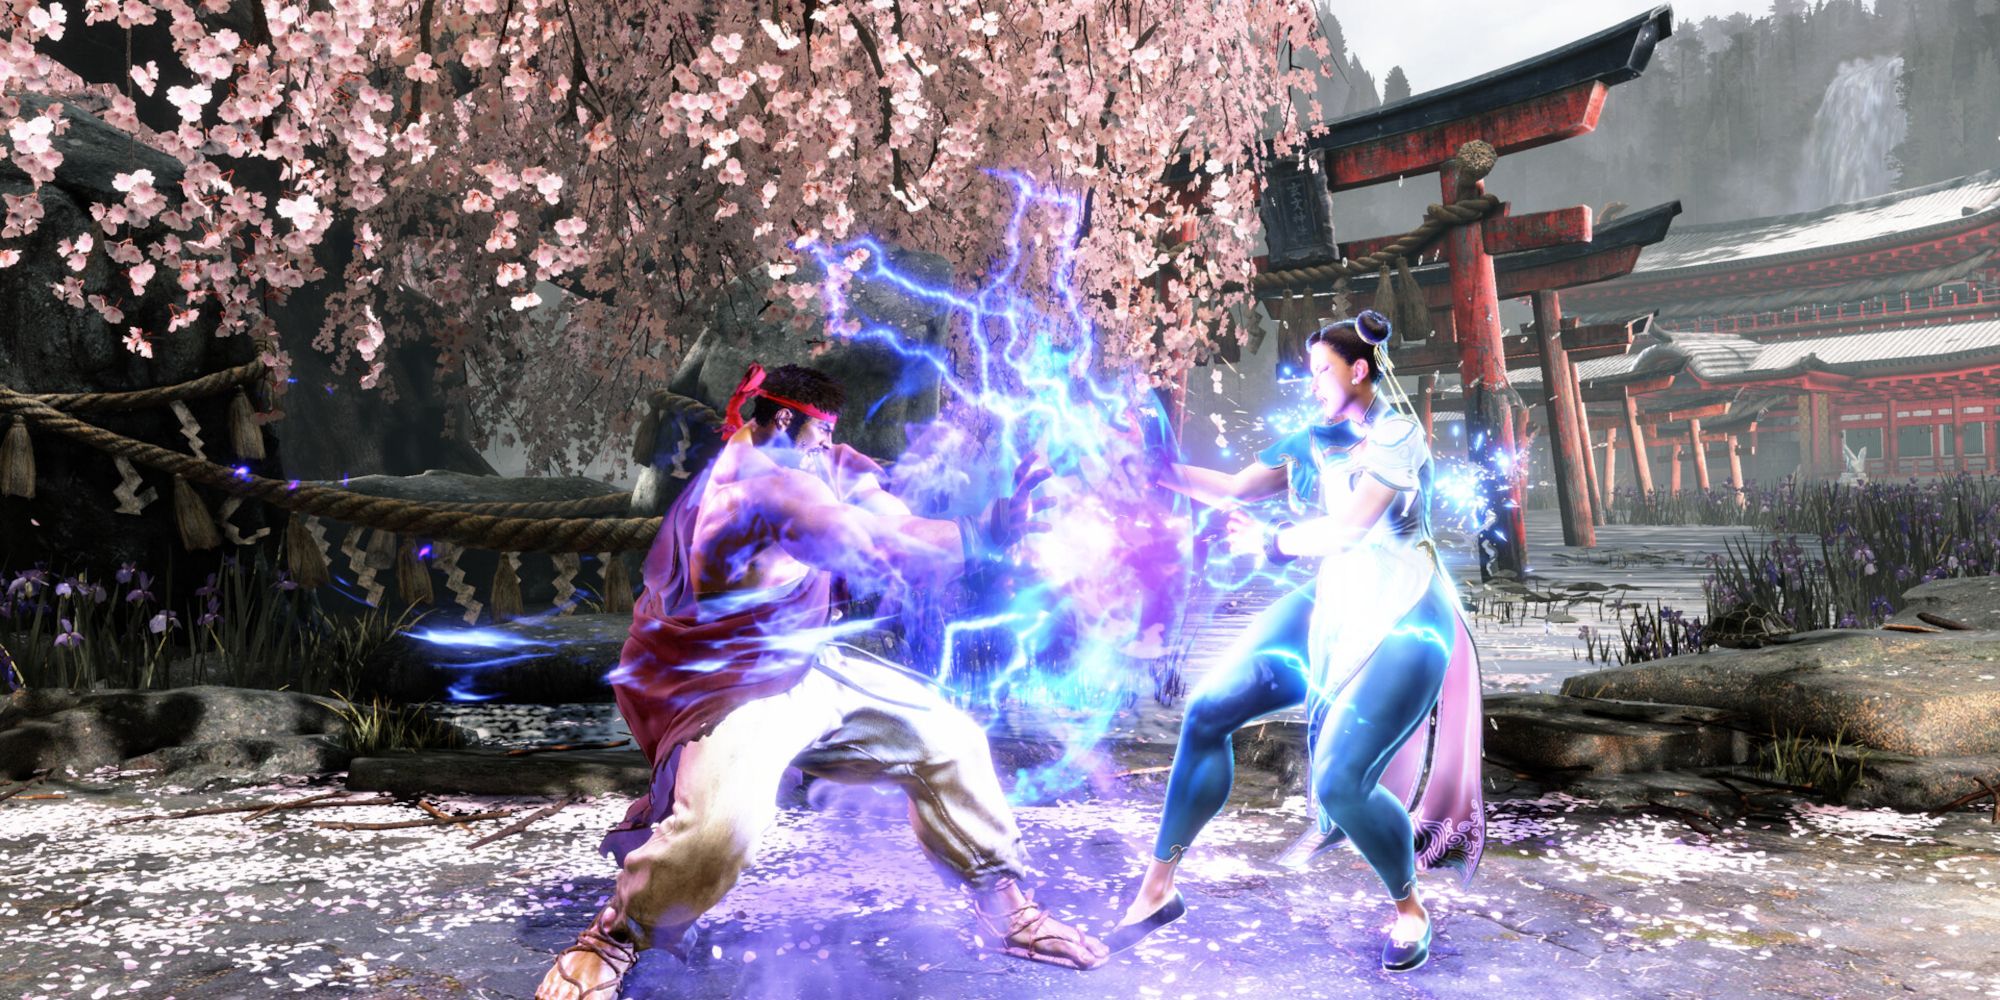 Ryu fighting Chun-li in Street Fighter 6